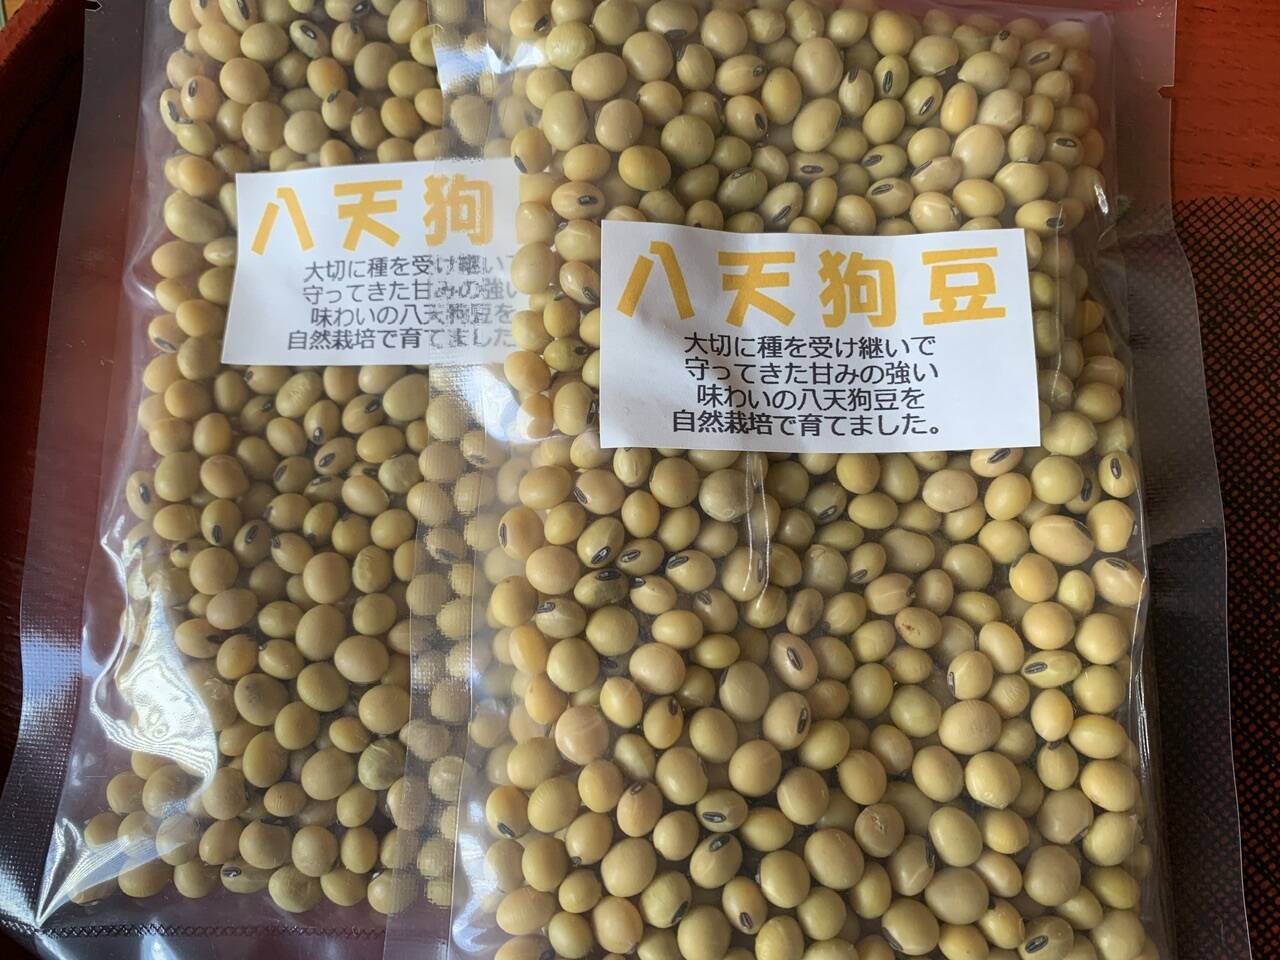 自然栽培 幻の大豆 『八天狗』20kg 熊本県産値段が変わりますか